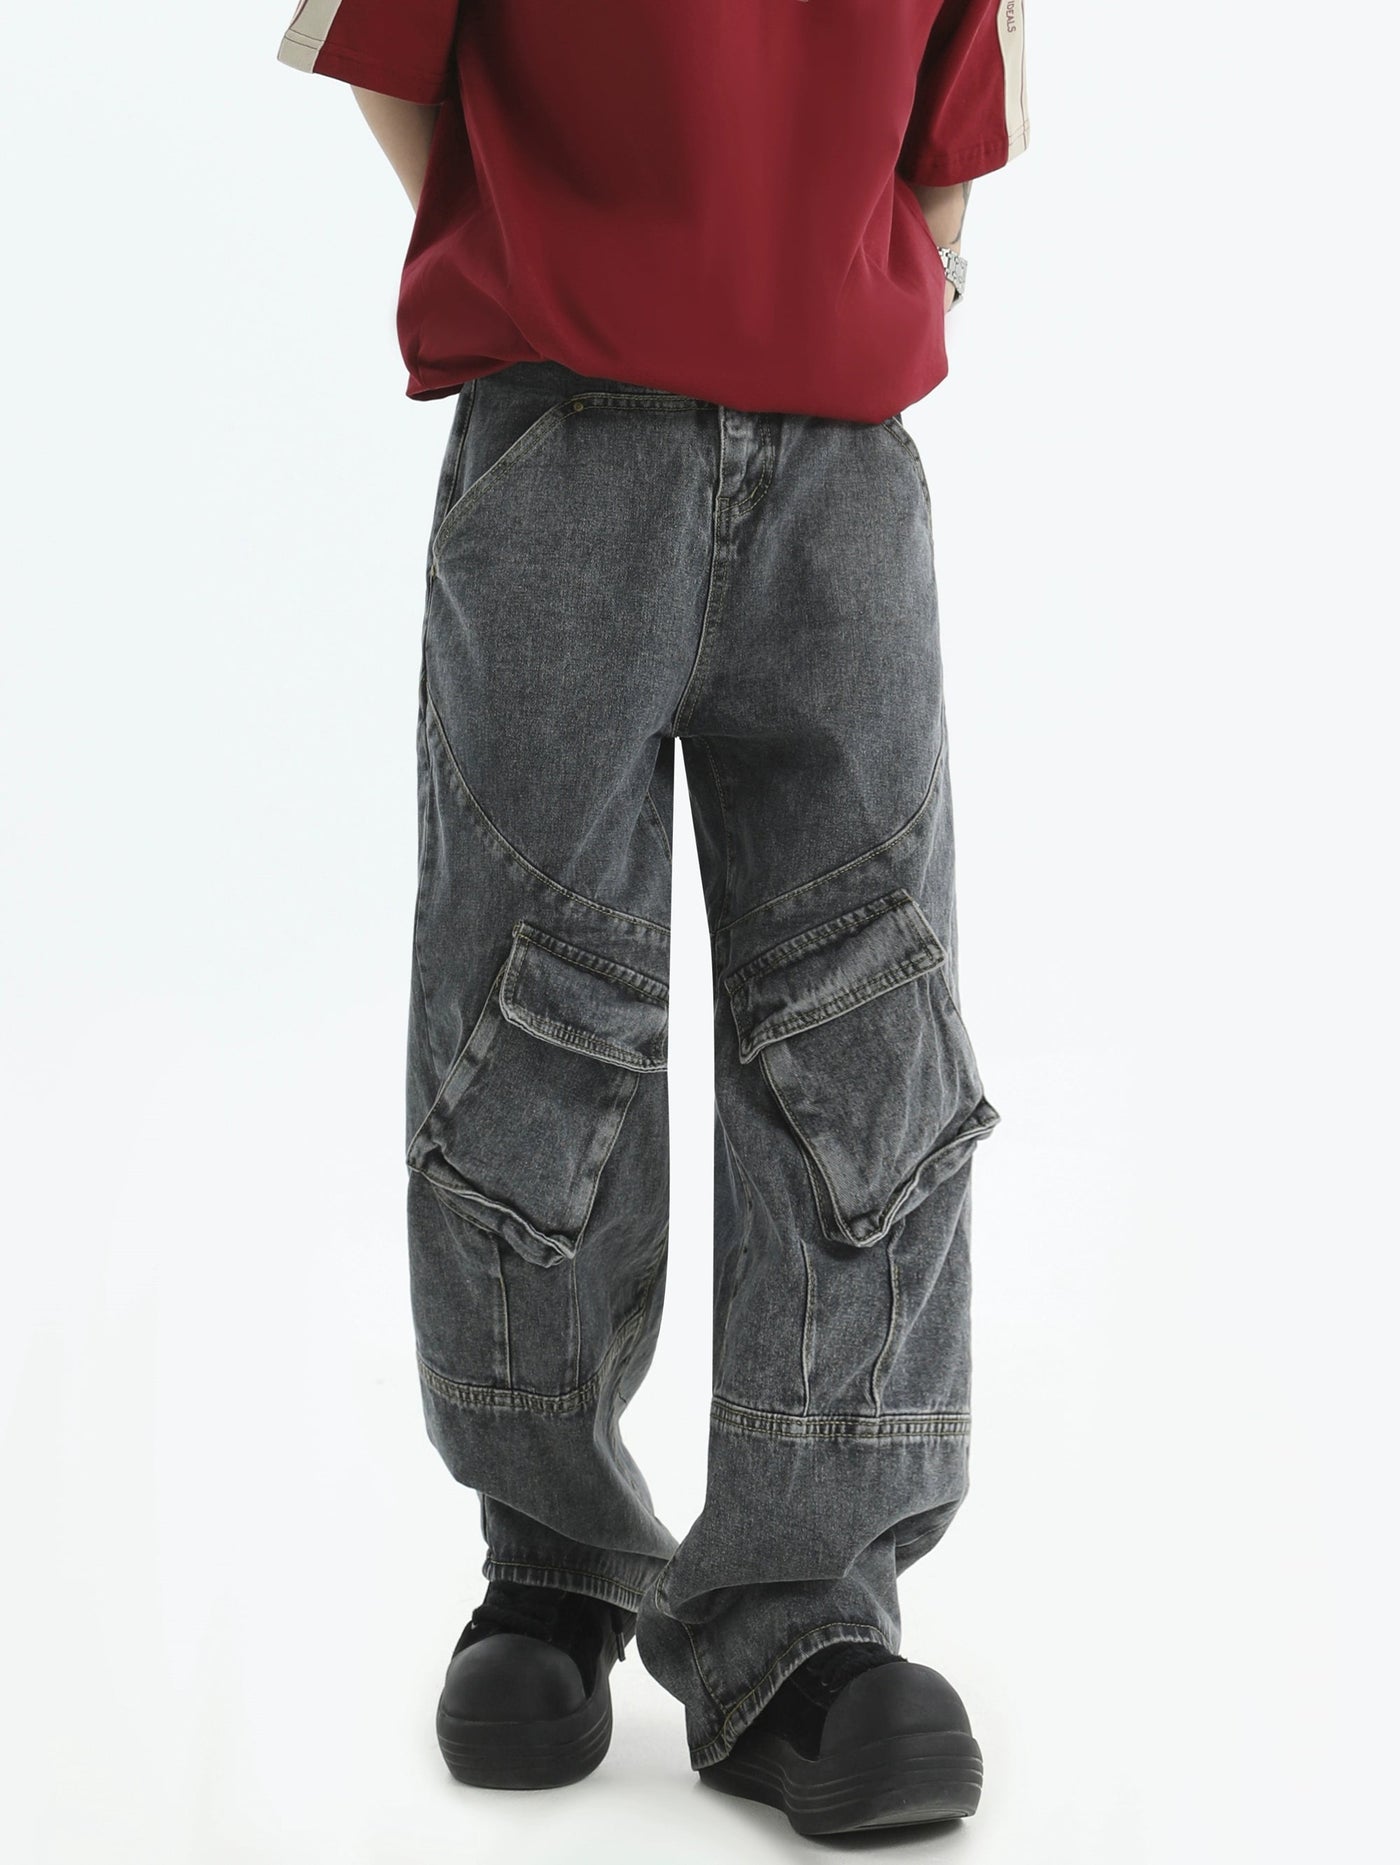 Tilted Pocket Cargo Jeans Korean Street Fashion Jeans By INS Korea Shop Online at OH Vault